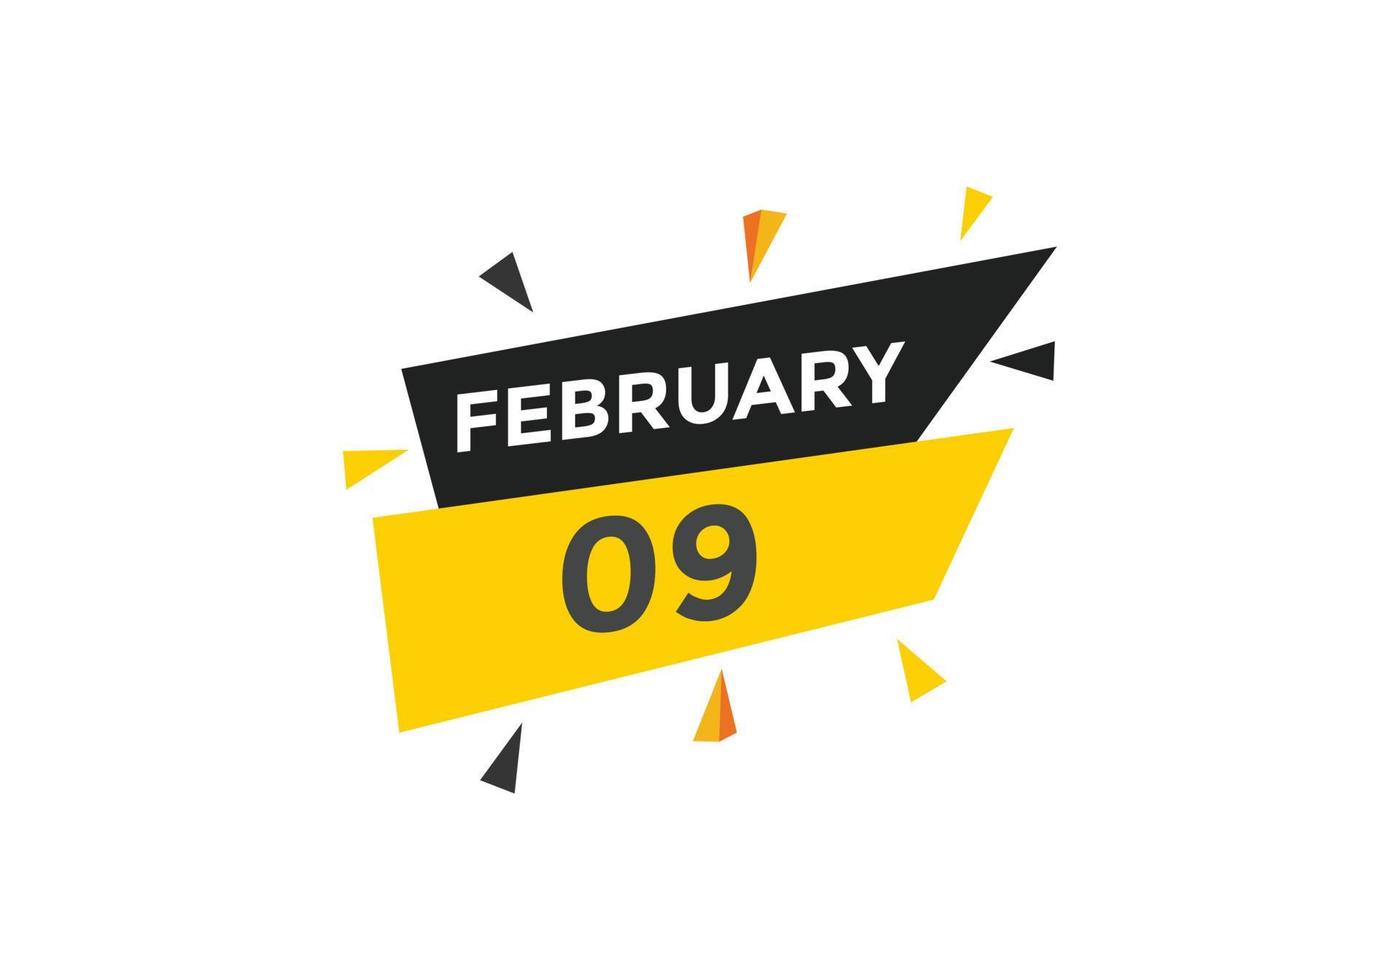 februari 9 kalender påminnelse. 9:e februari dagligen kalender ikon mall. kalender 9:e februari ikon design mall. vektor illustration